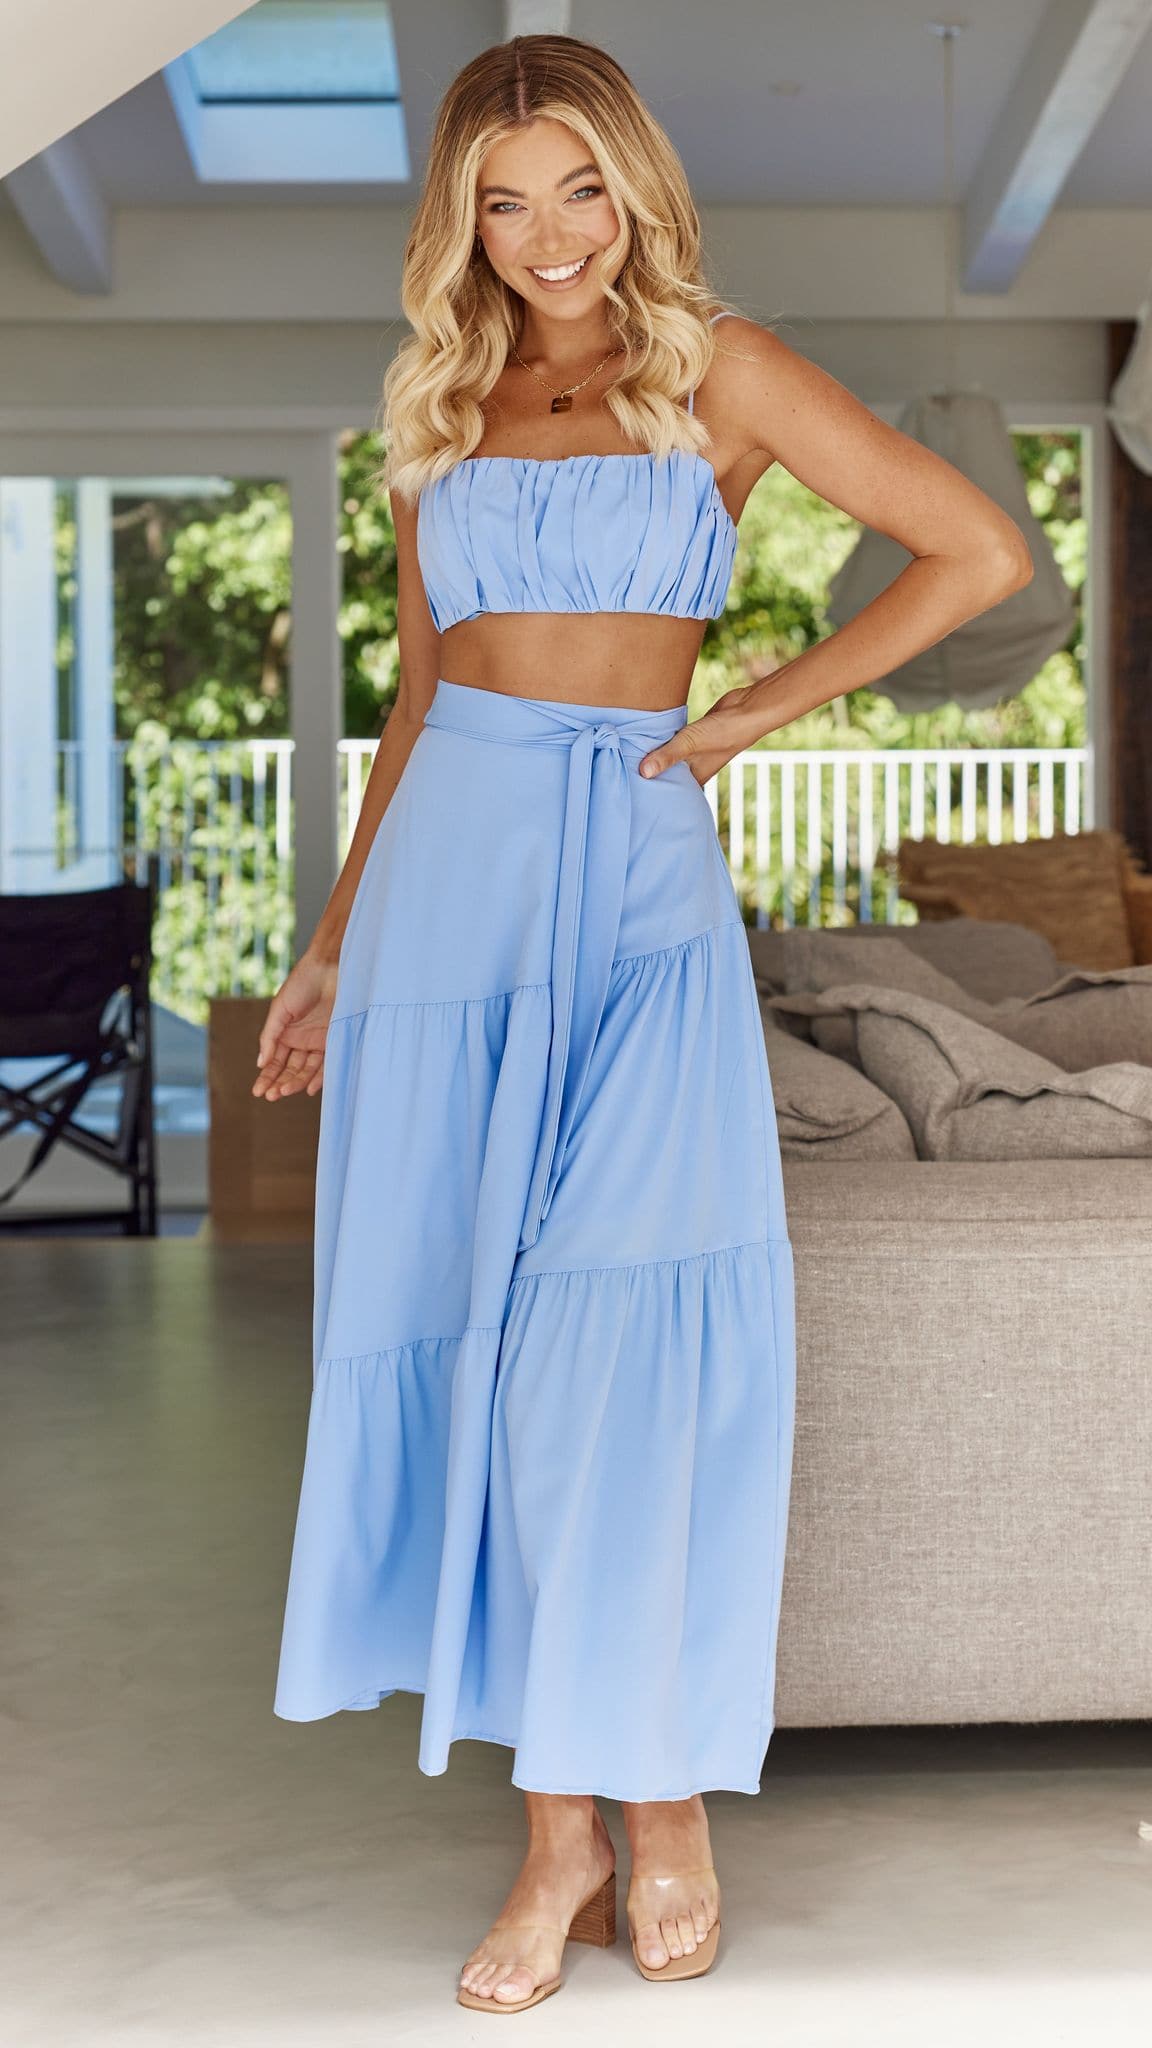 Saraya Top and Skirt Set - Blue